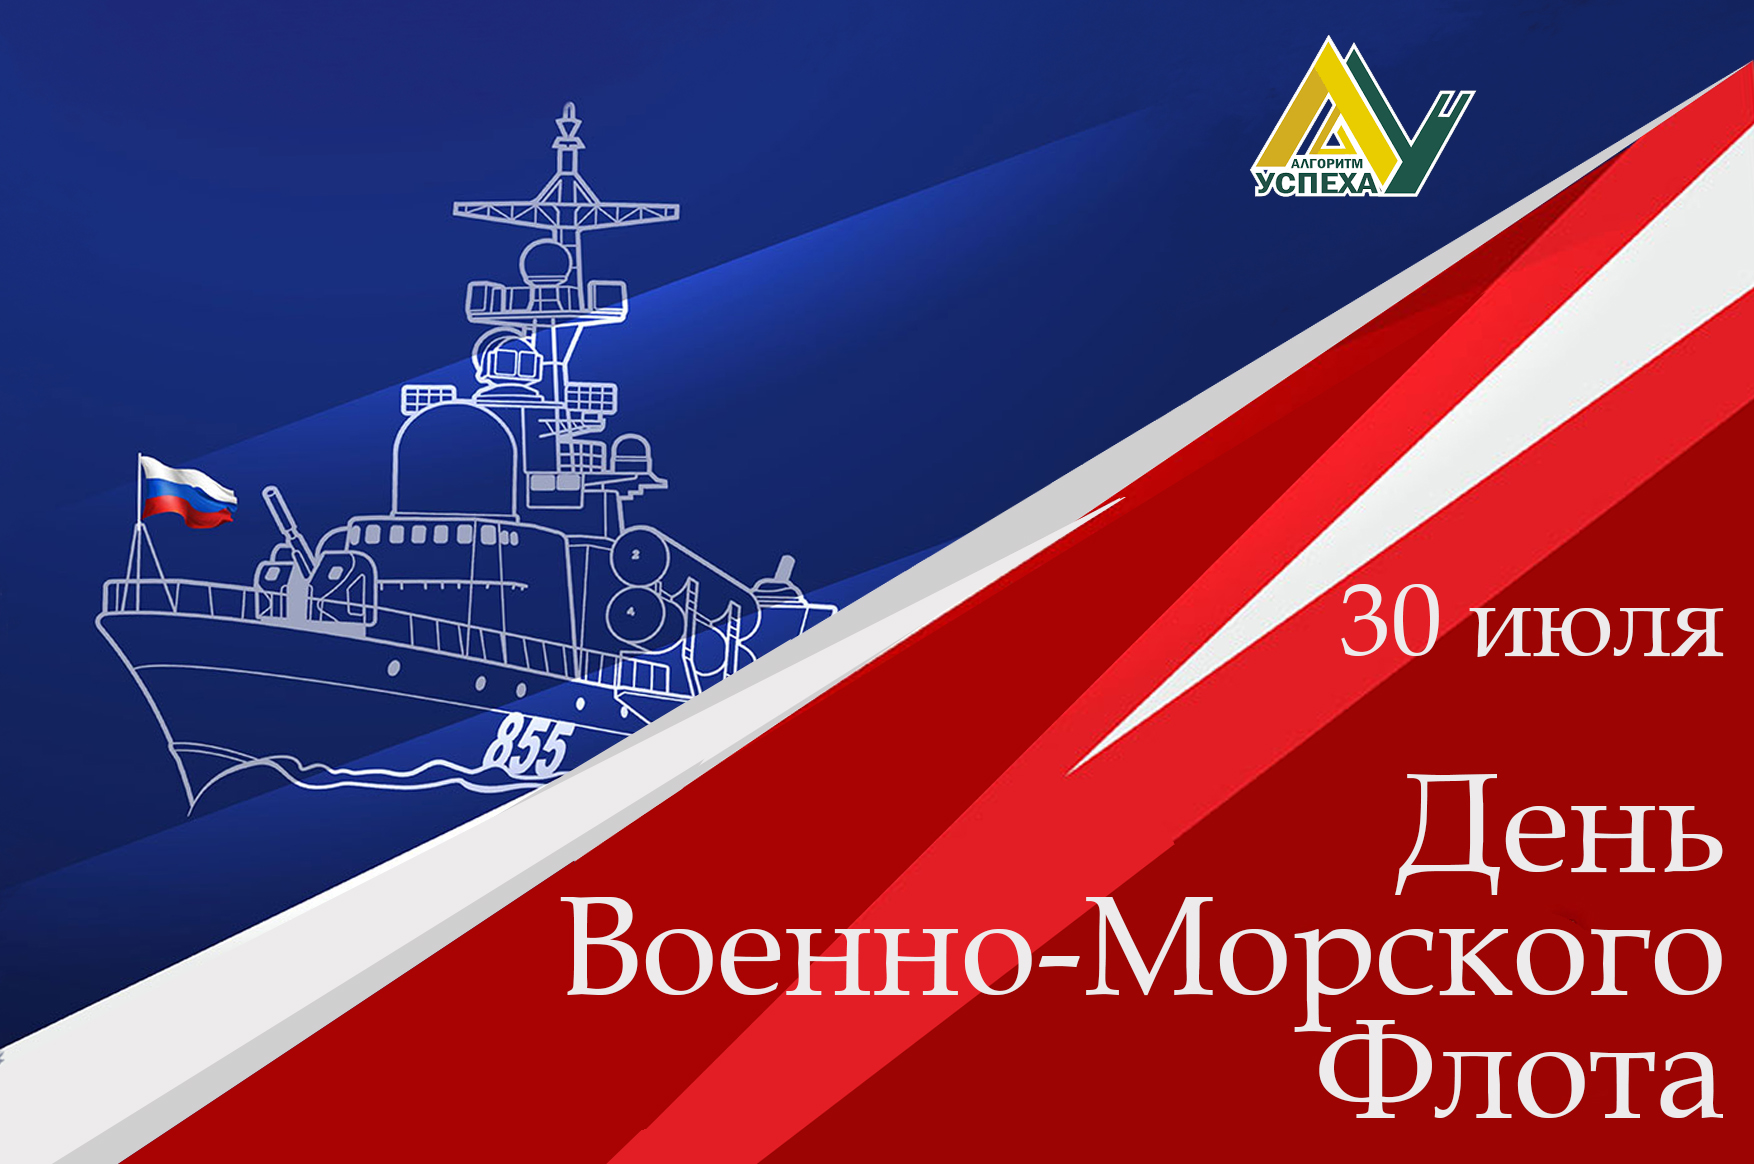 30 июля - День Военно-морского флота Российской Федерации.